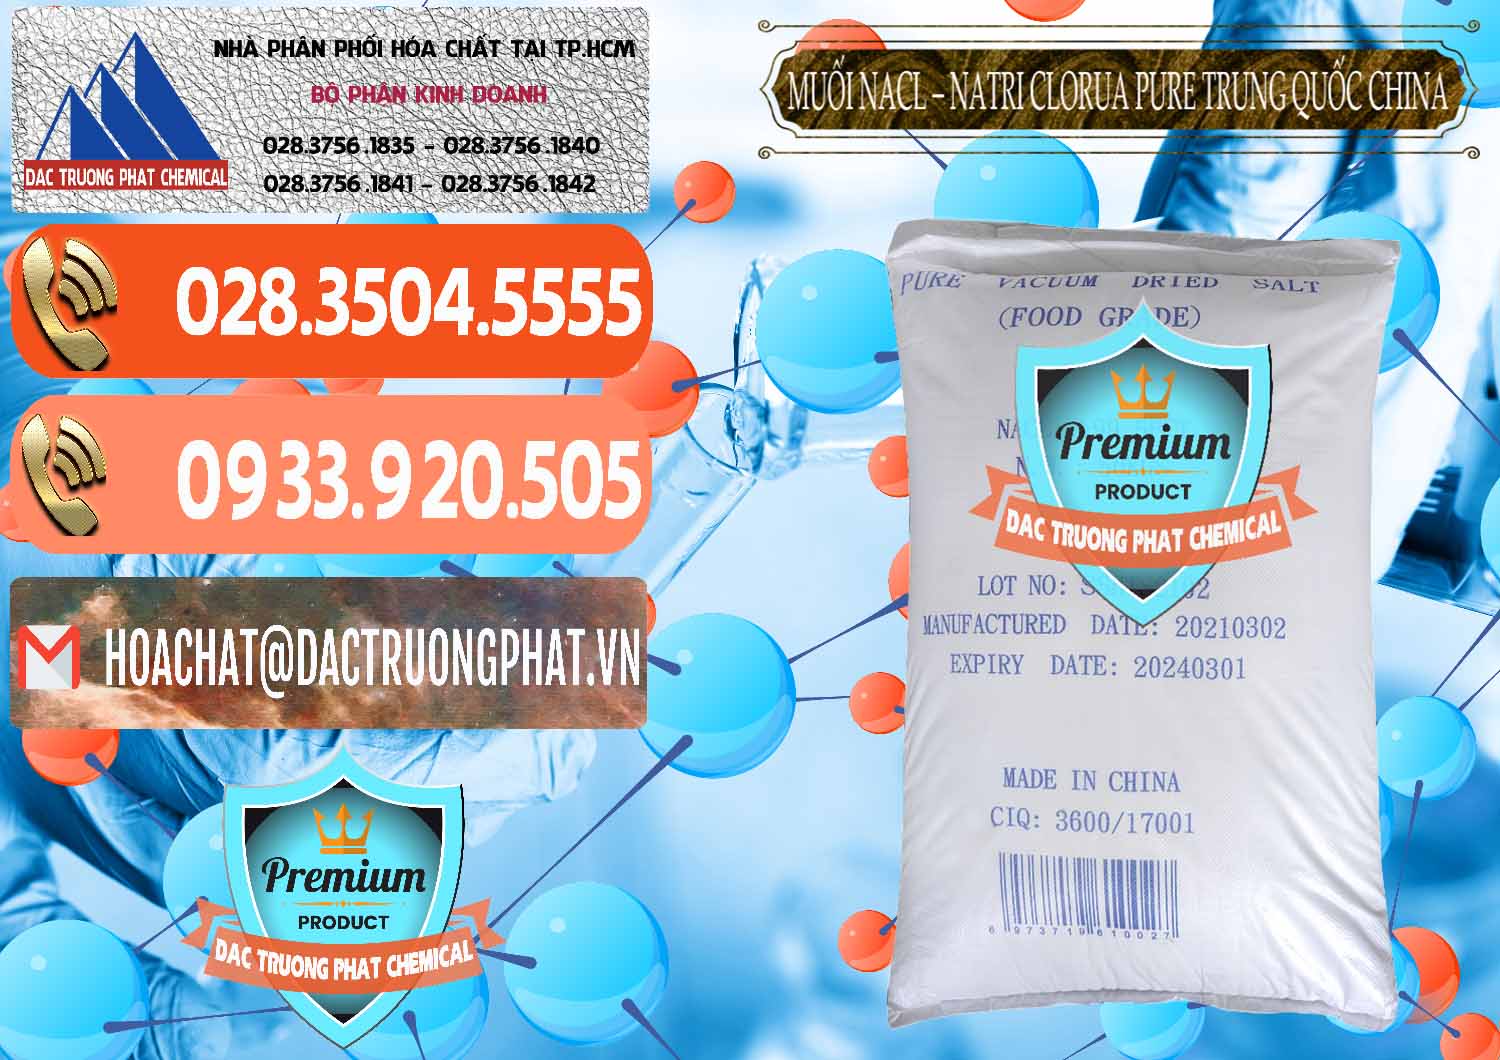 Cty bán ( phân phối ) Muối NaCL – Sodium Chloride Pure Trung Quốc China - 0230 - Chuyên phân phối và kinh doanh hóa chất tại TP.HCM - hoachatmientay.com